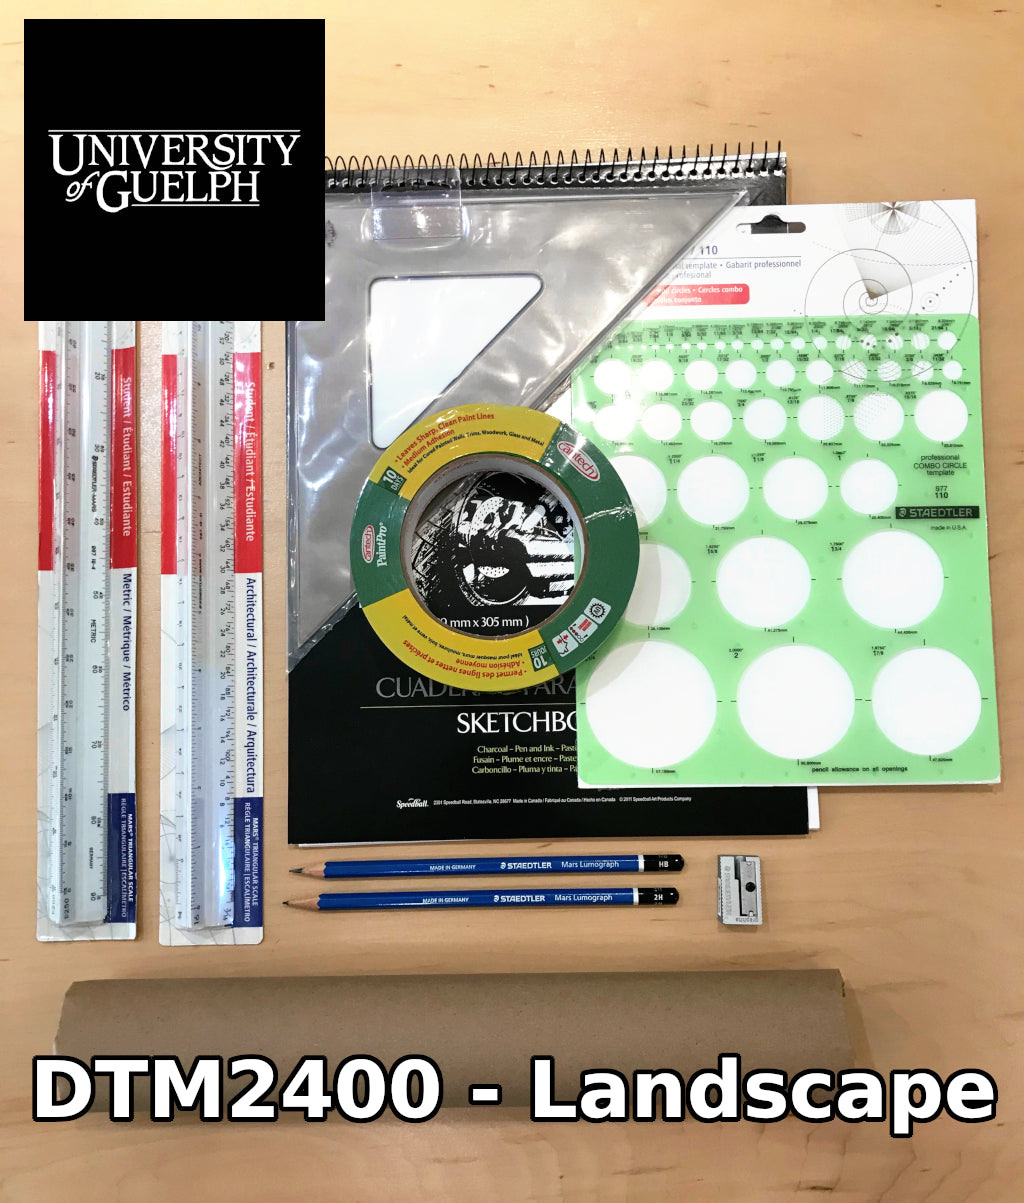 DTM 2400 Kit - U of G Landscape